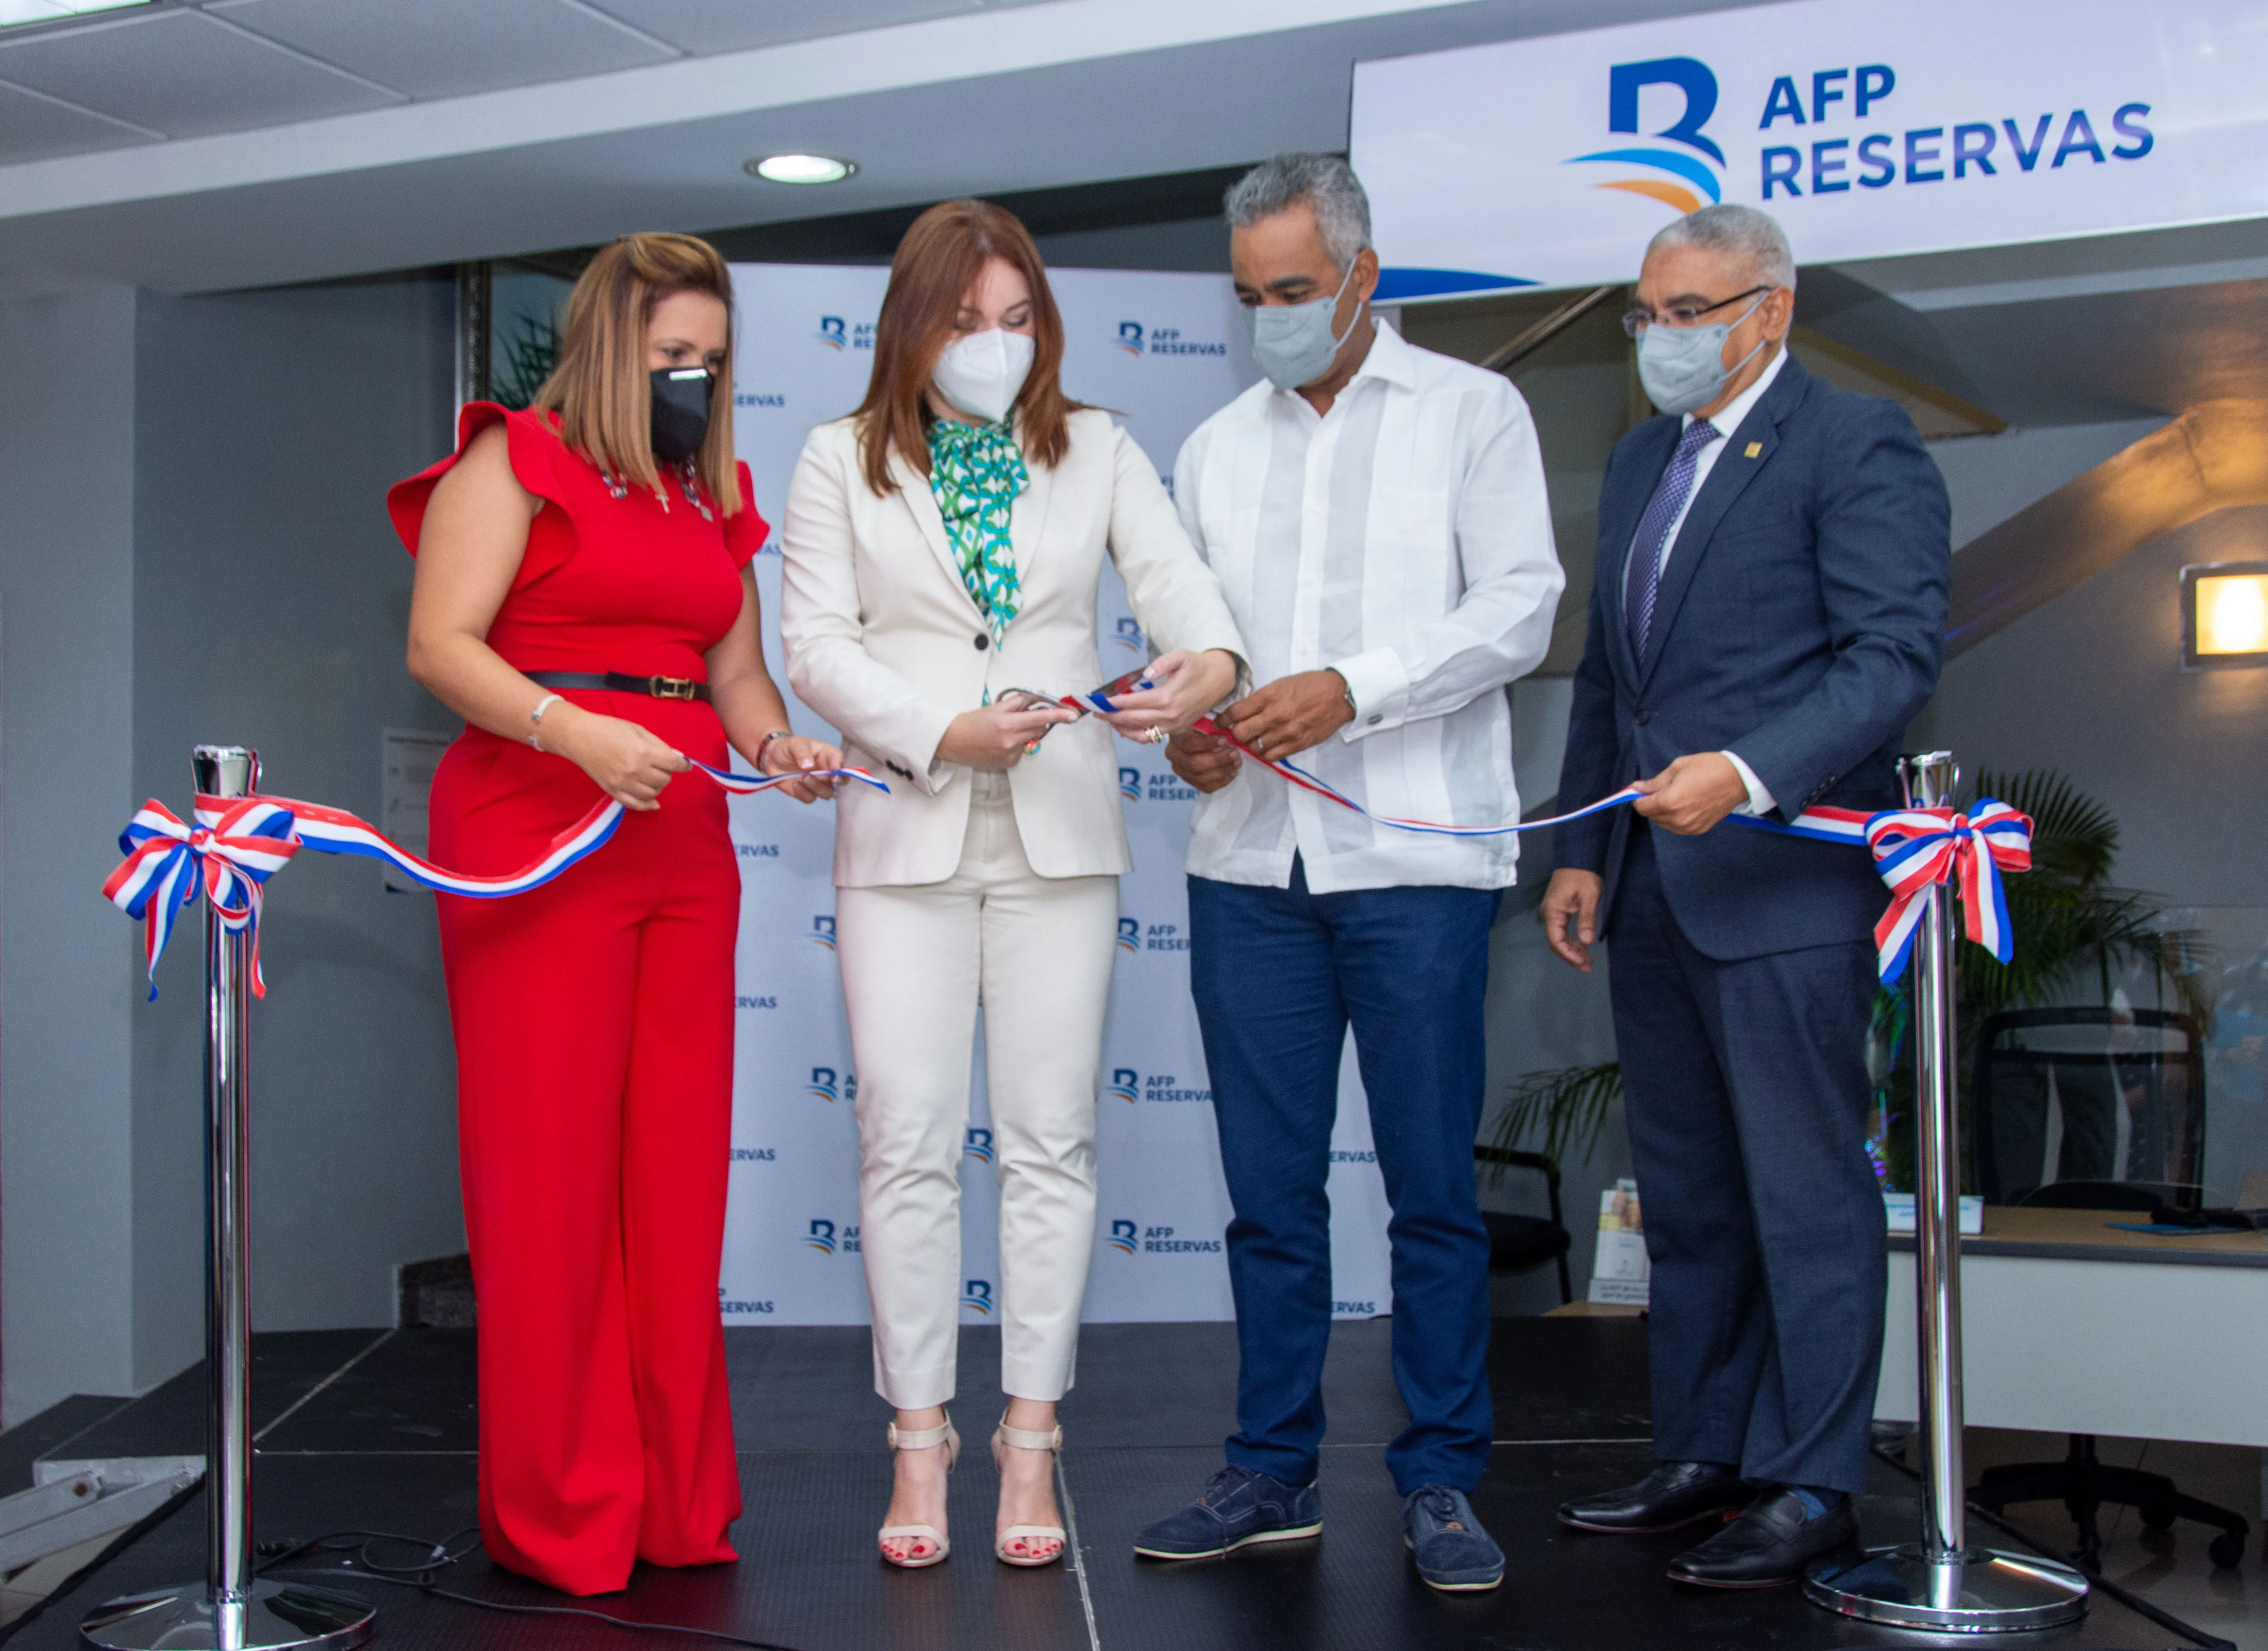 AFP Reservas inaugura agencia de servicio al cliente en Punta Cana